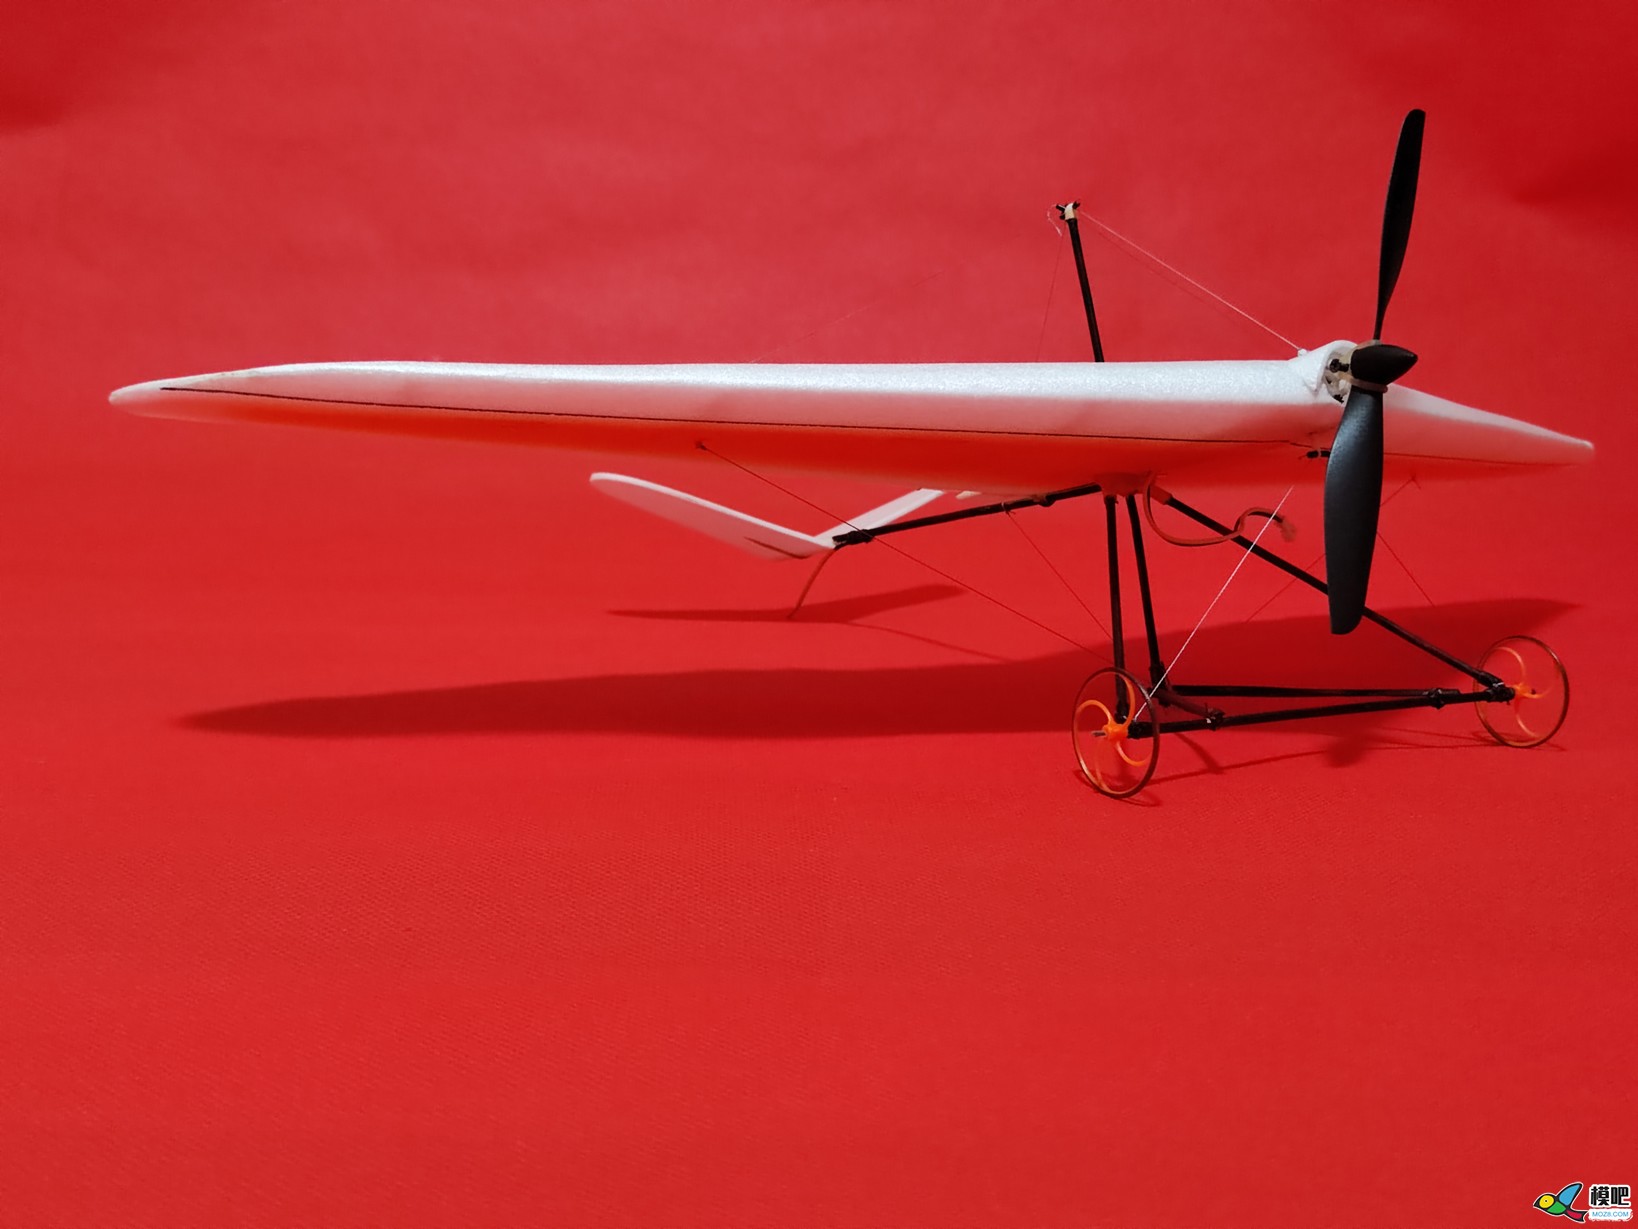 【爱因制造】自制不知名滑翔飞翼机 电池,图纸,接收机,飞翼,滑翔伞 作者:xbnlkdbxl 6652 